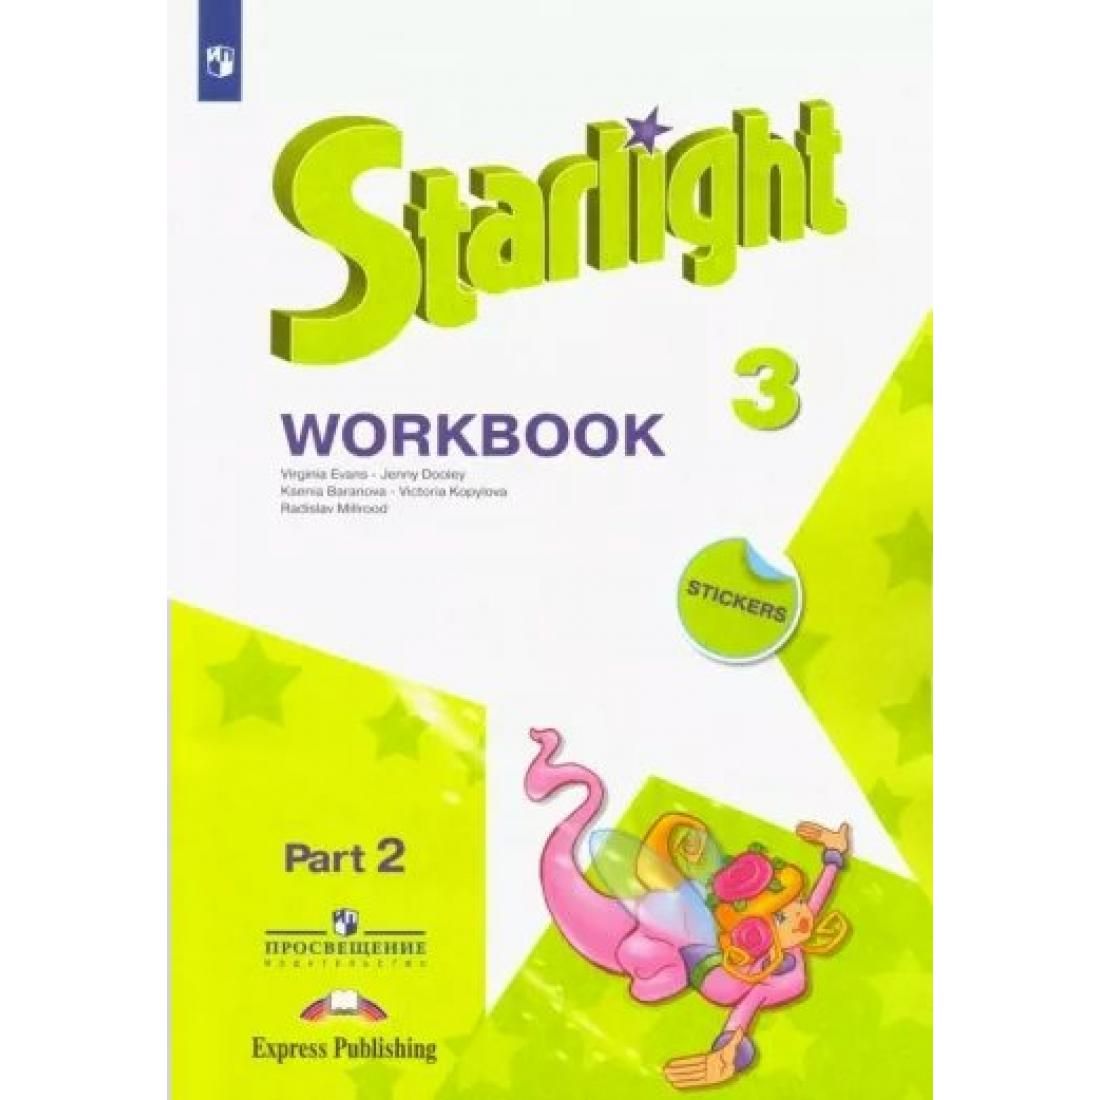 Старлайт углубленный английский. Starlight 3 Workbook 2 часть. Workbook 3 класс Starlight 2 часть. Starlight 2 Workbook Part 2. Starlight Workbook 2 класс 2 часть.